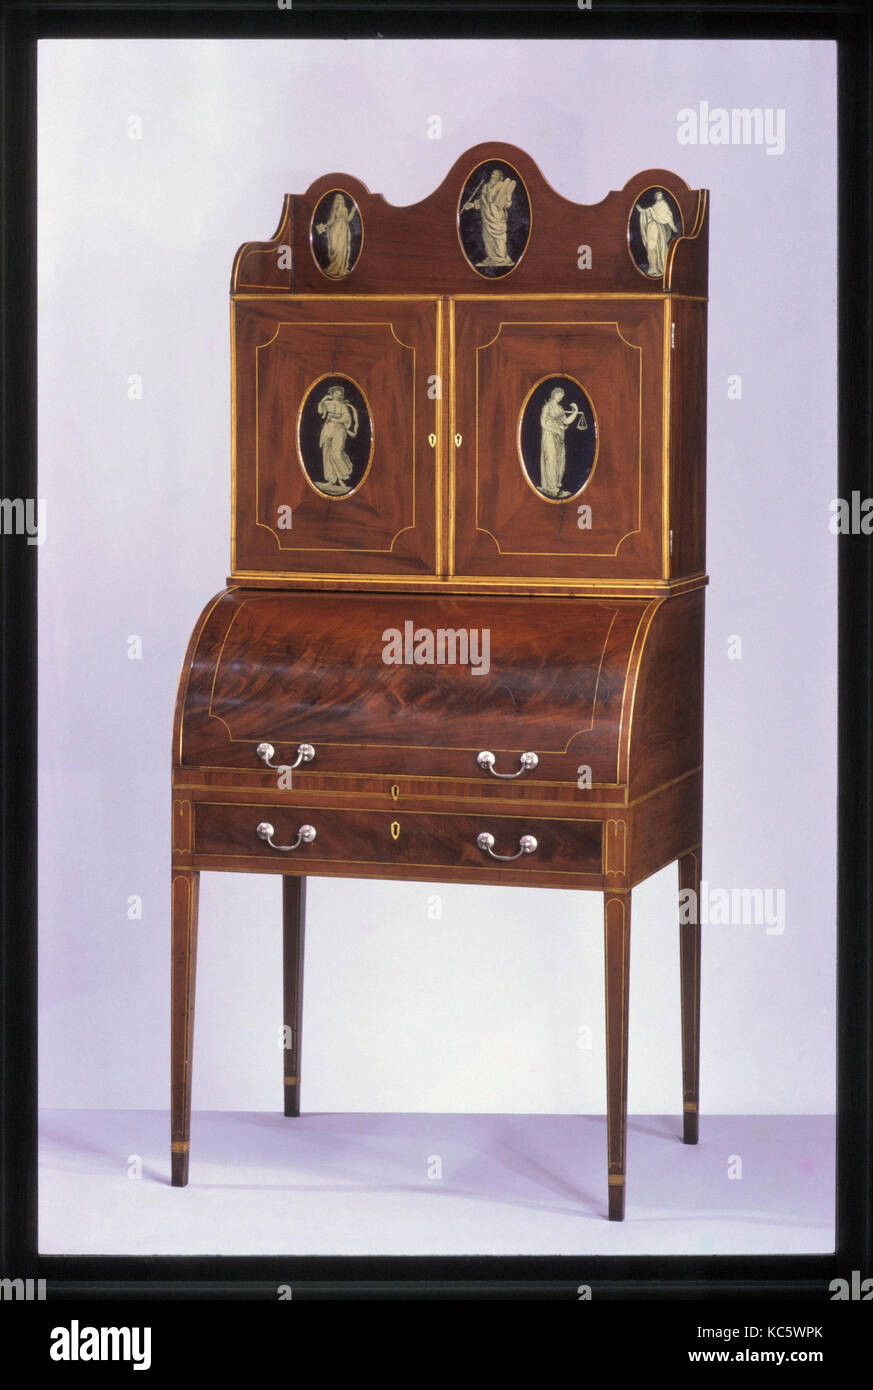 Schreibtisch und Bücherregal, 1800-1810, in Baltimore, Maryland, USA,  US-amerikanischen, Mahagoni, satinwood, Holly, verre églomisé  Stockfotografie - Alamy